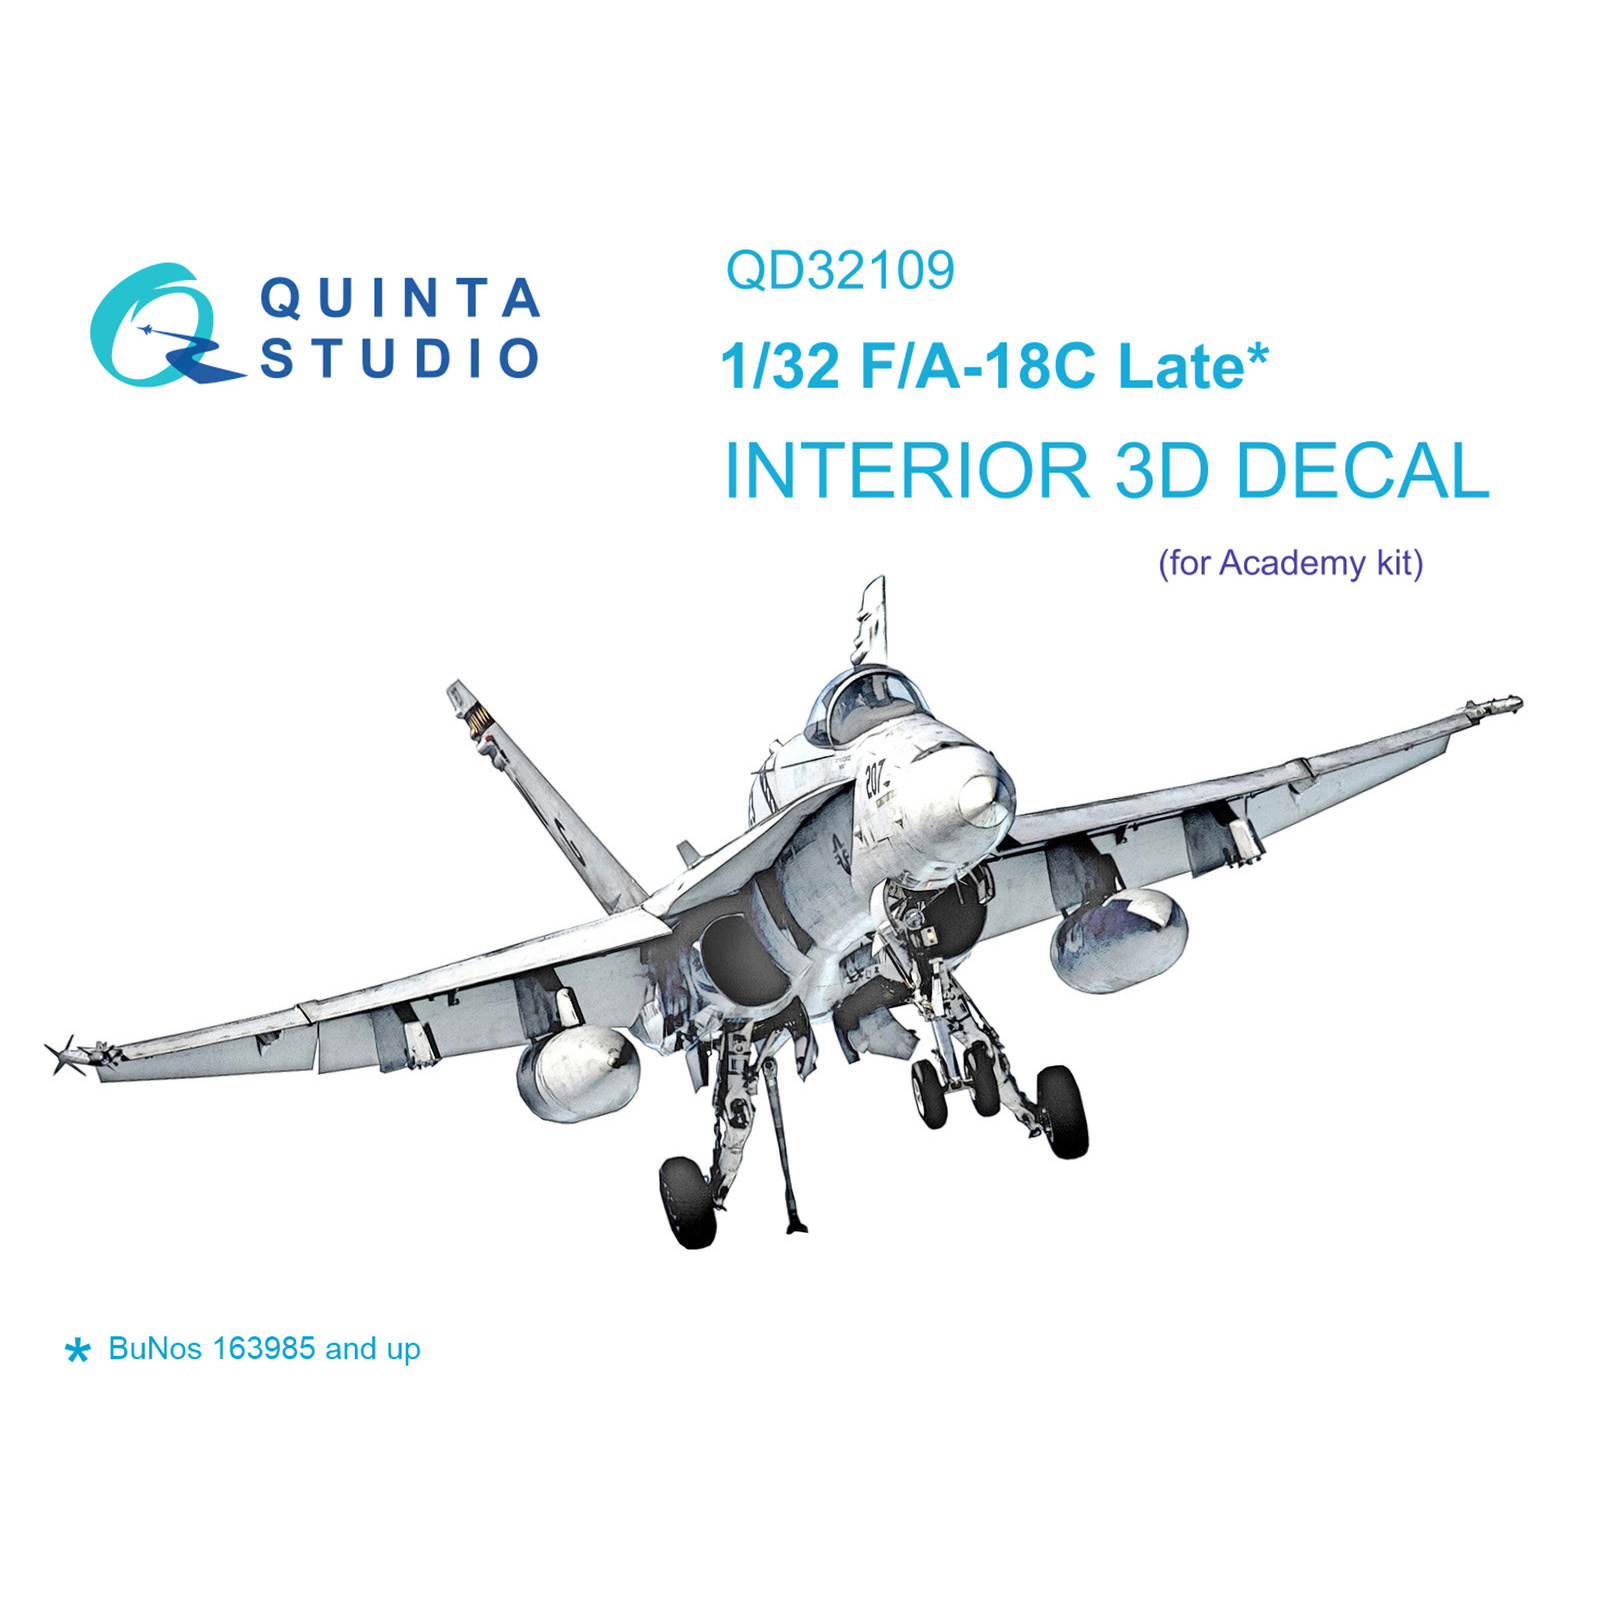 QD32109 Quinta Studio 1/32 3D Декаль интерьера кабины F/A-18C Late (Academy)